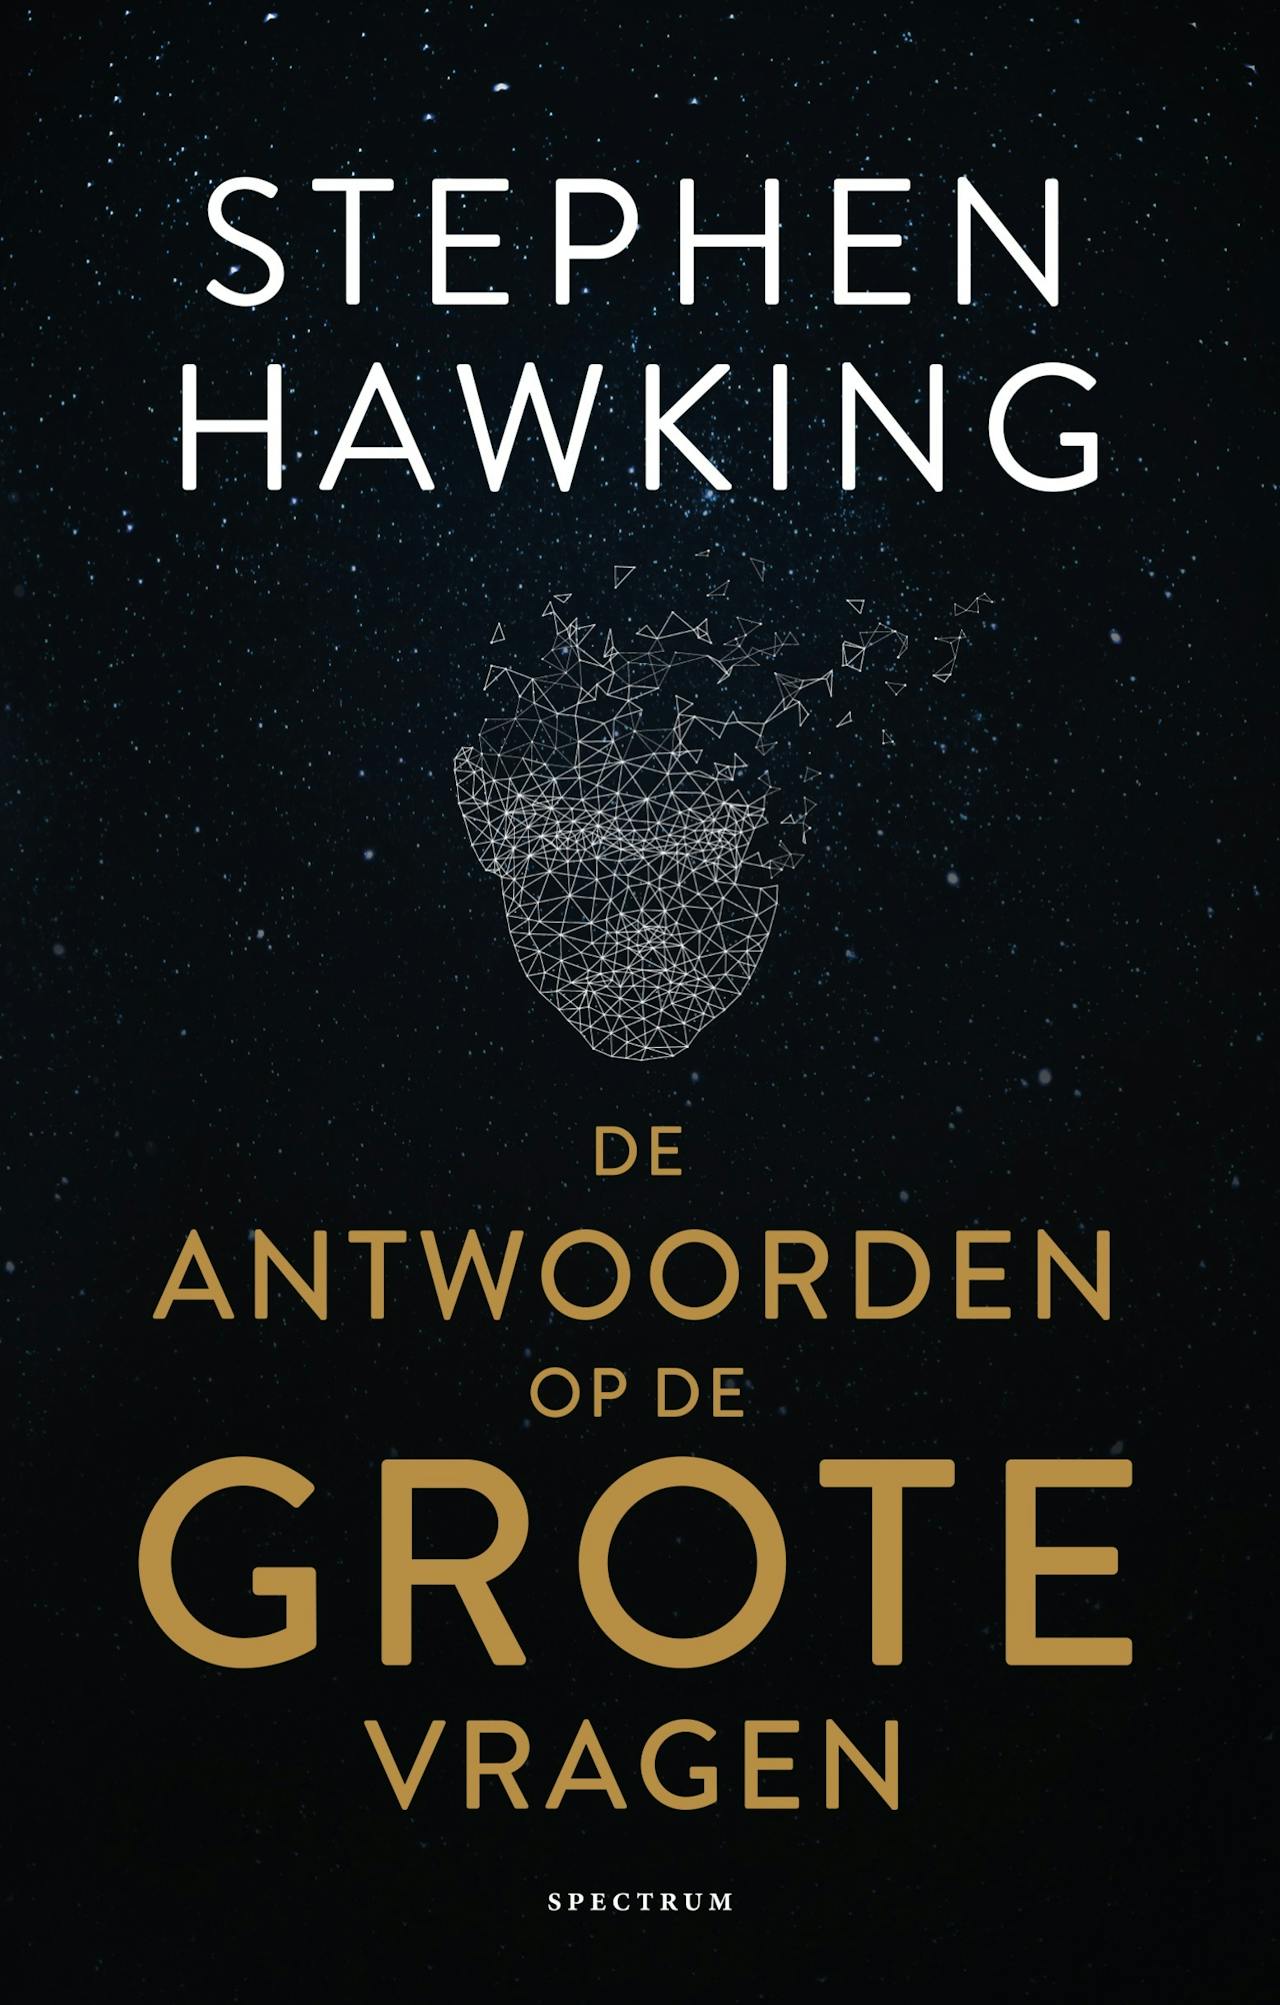 De cover van het boek 'De antwoorden op de grote vragen' van Stephen Hawking.